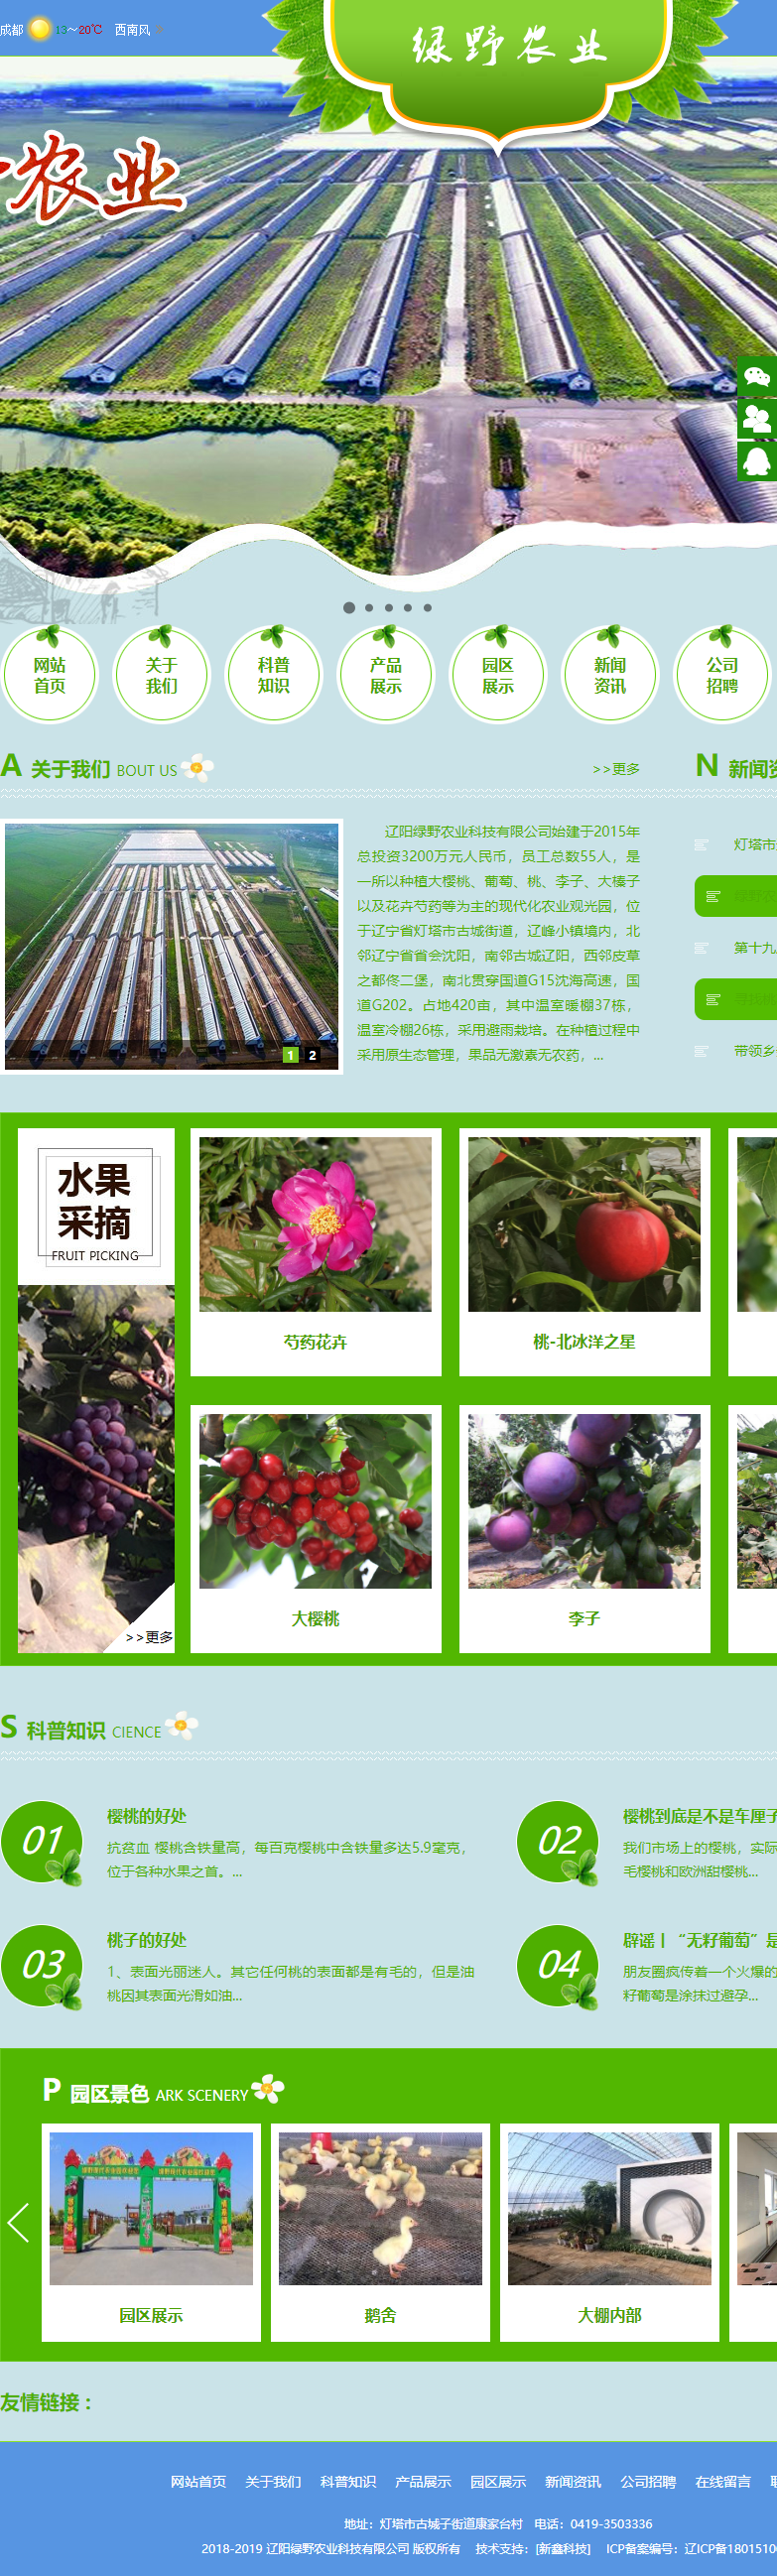 辽阳绿野农业科技有限公司网站案例